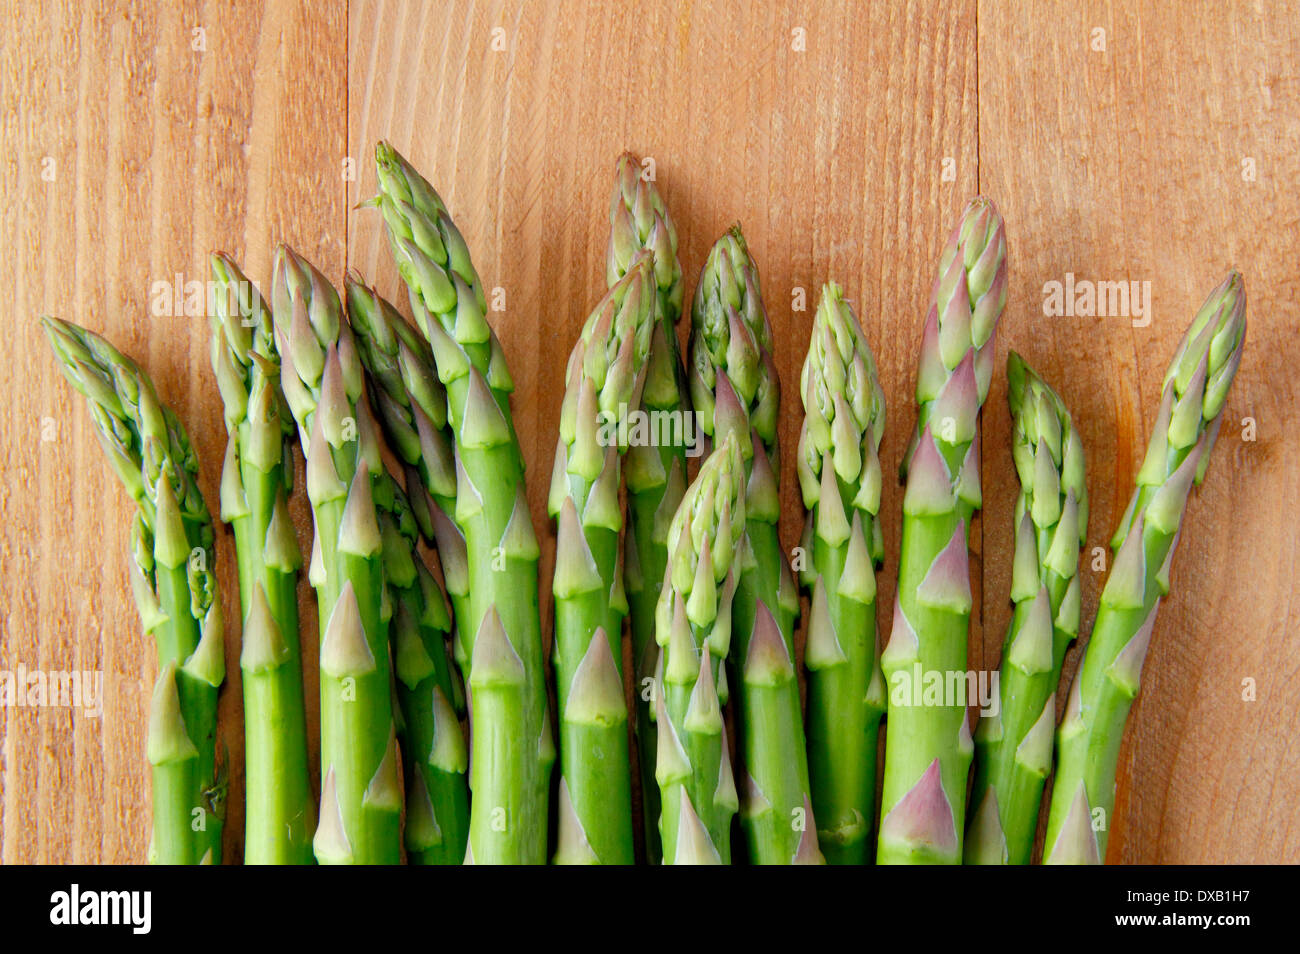 Freschi di punte di asparagi verdi/piccioli contro lo sfondo di legno, REGNO UNITO Foto Stock